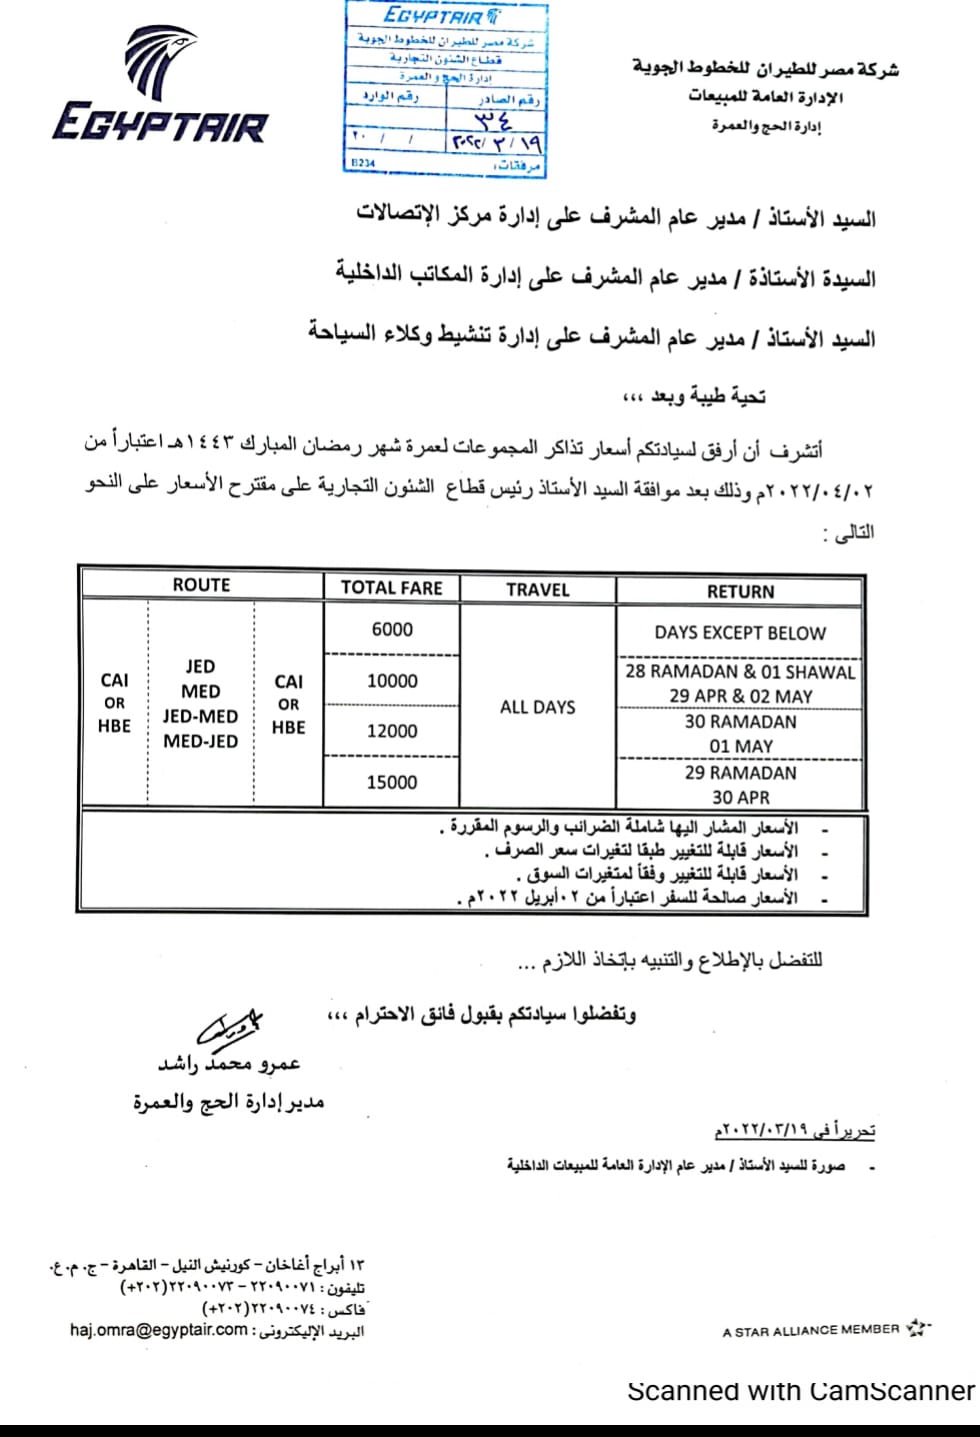 مصر للطيران» تطرح أسعار تذاكرها لعمرة رمضان - بوابة الأهرام